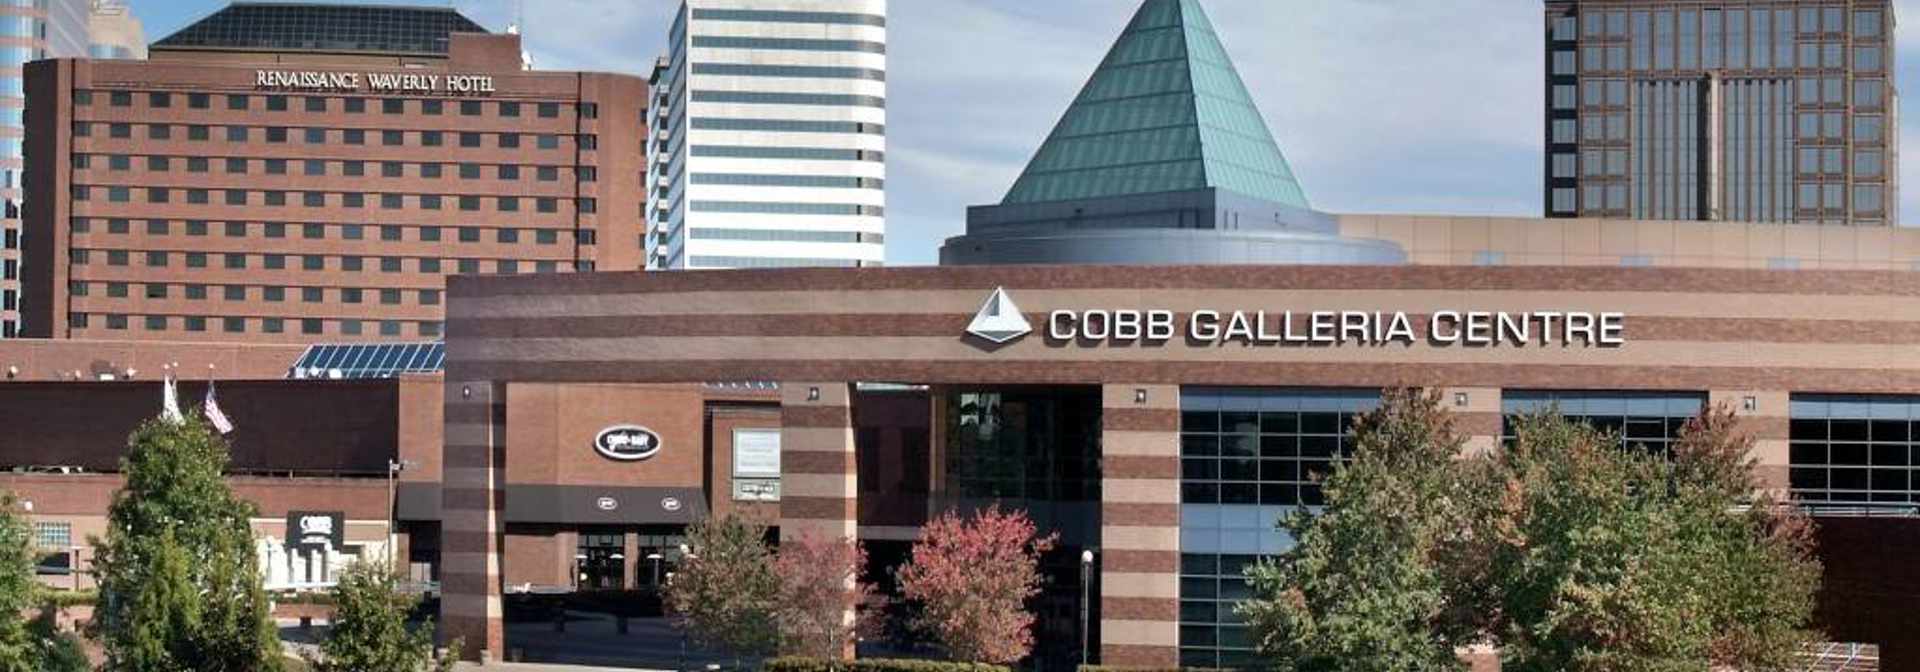 Cobb Galleria Centre1 1024X572